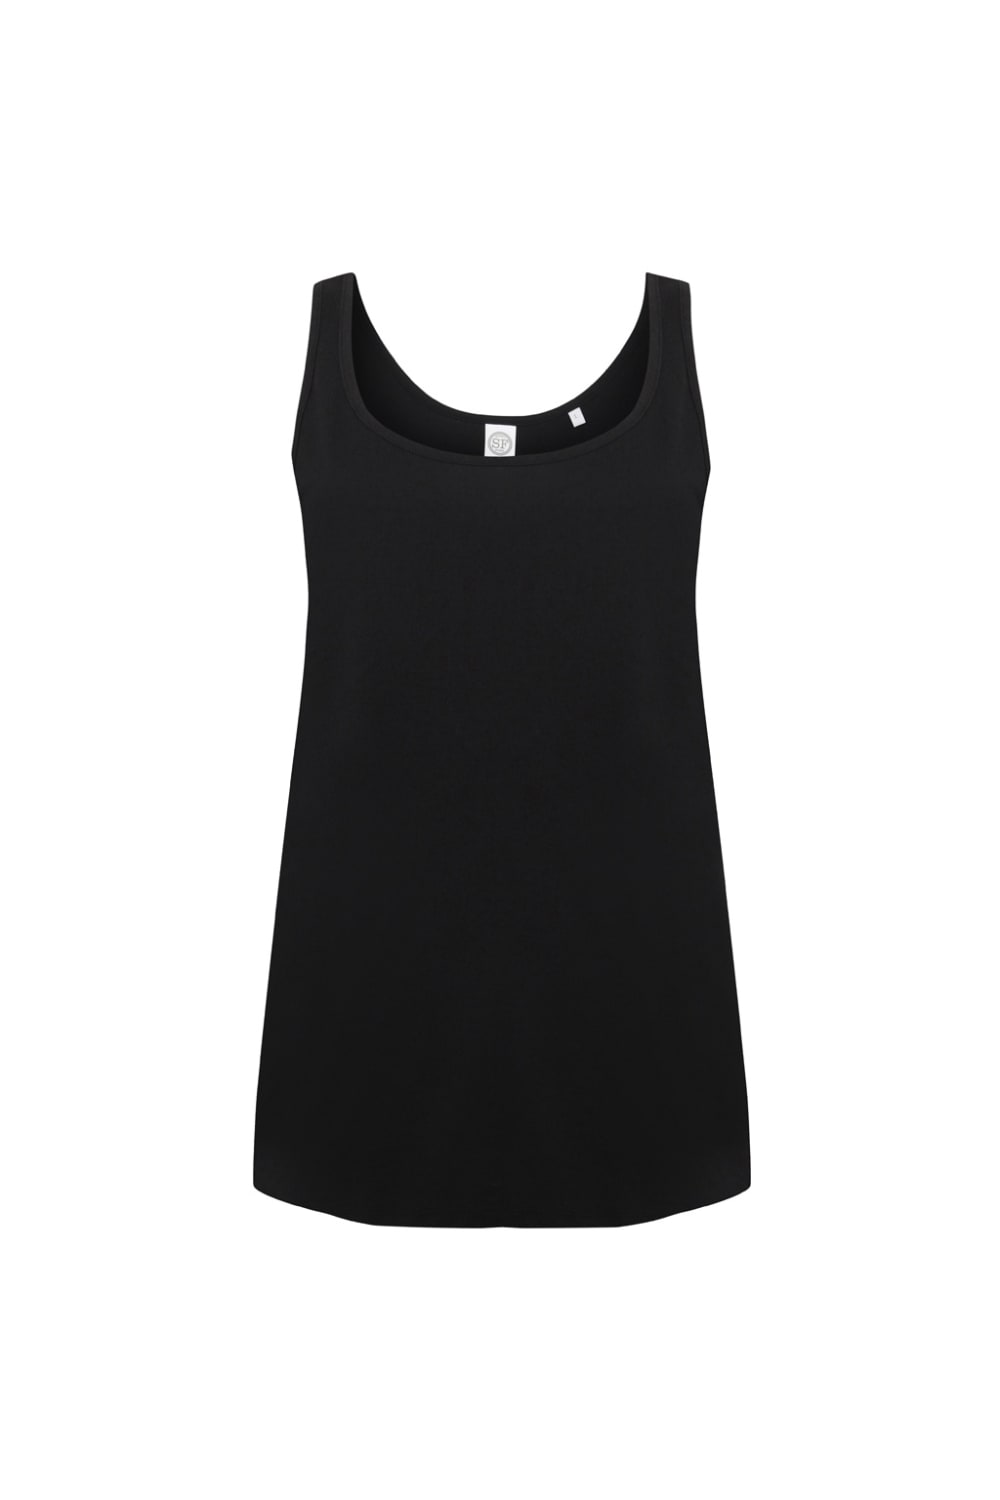 Womens/Ladies Slounge Undershirt - Black